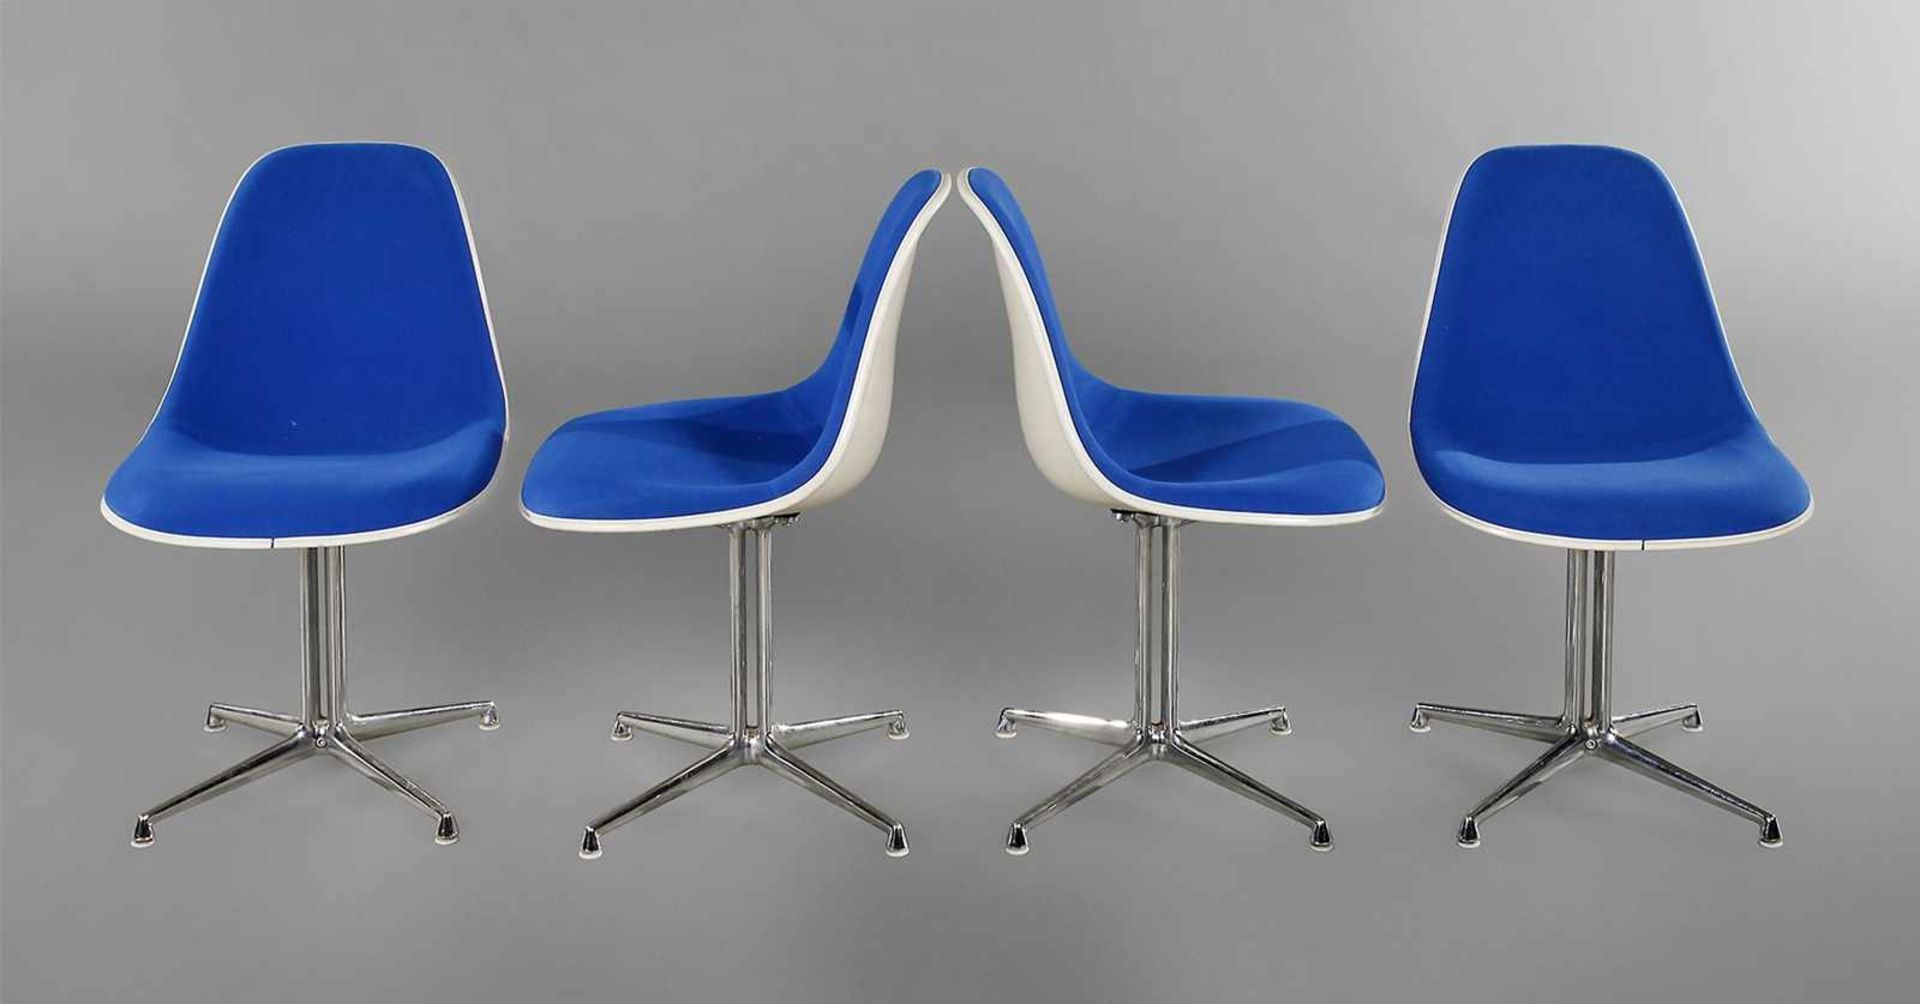 Vier Stühle "Lafonda" Charles & Ray Eames Entwurf 1961, Herstellung Vitra Weil am Rhein, Sitzschalen